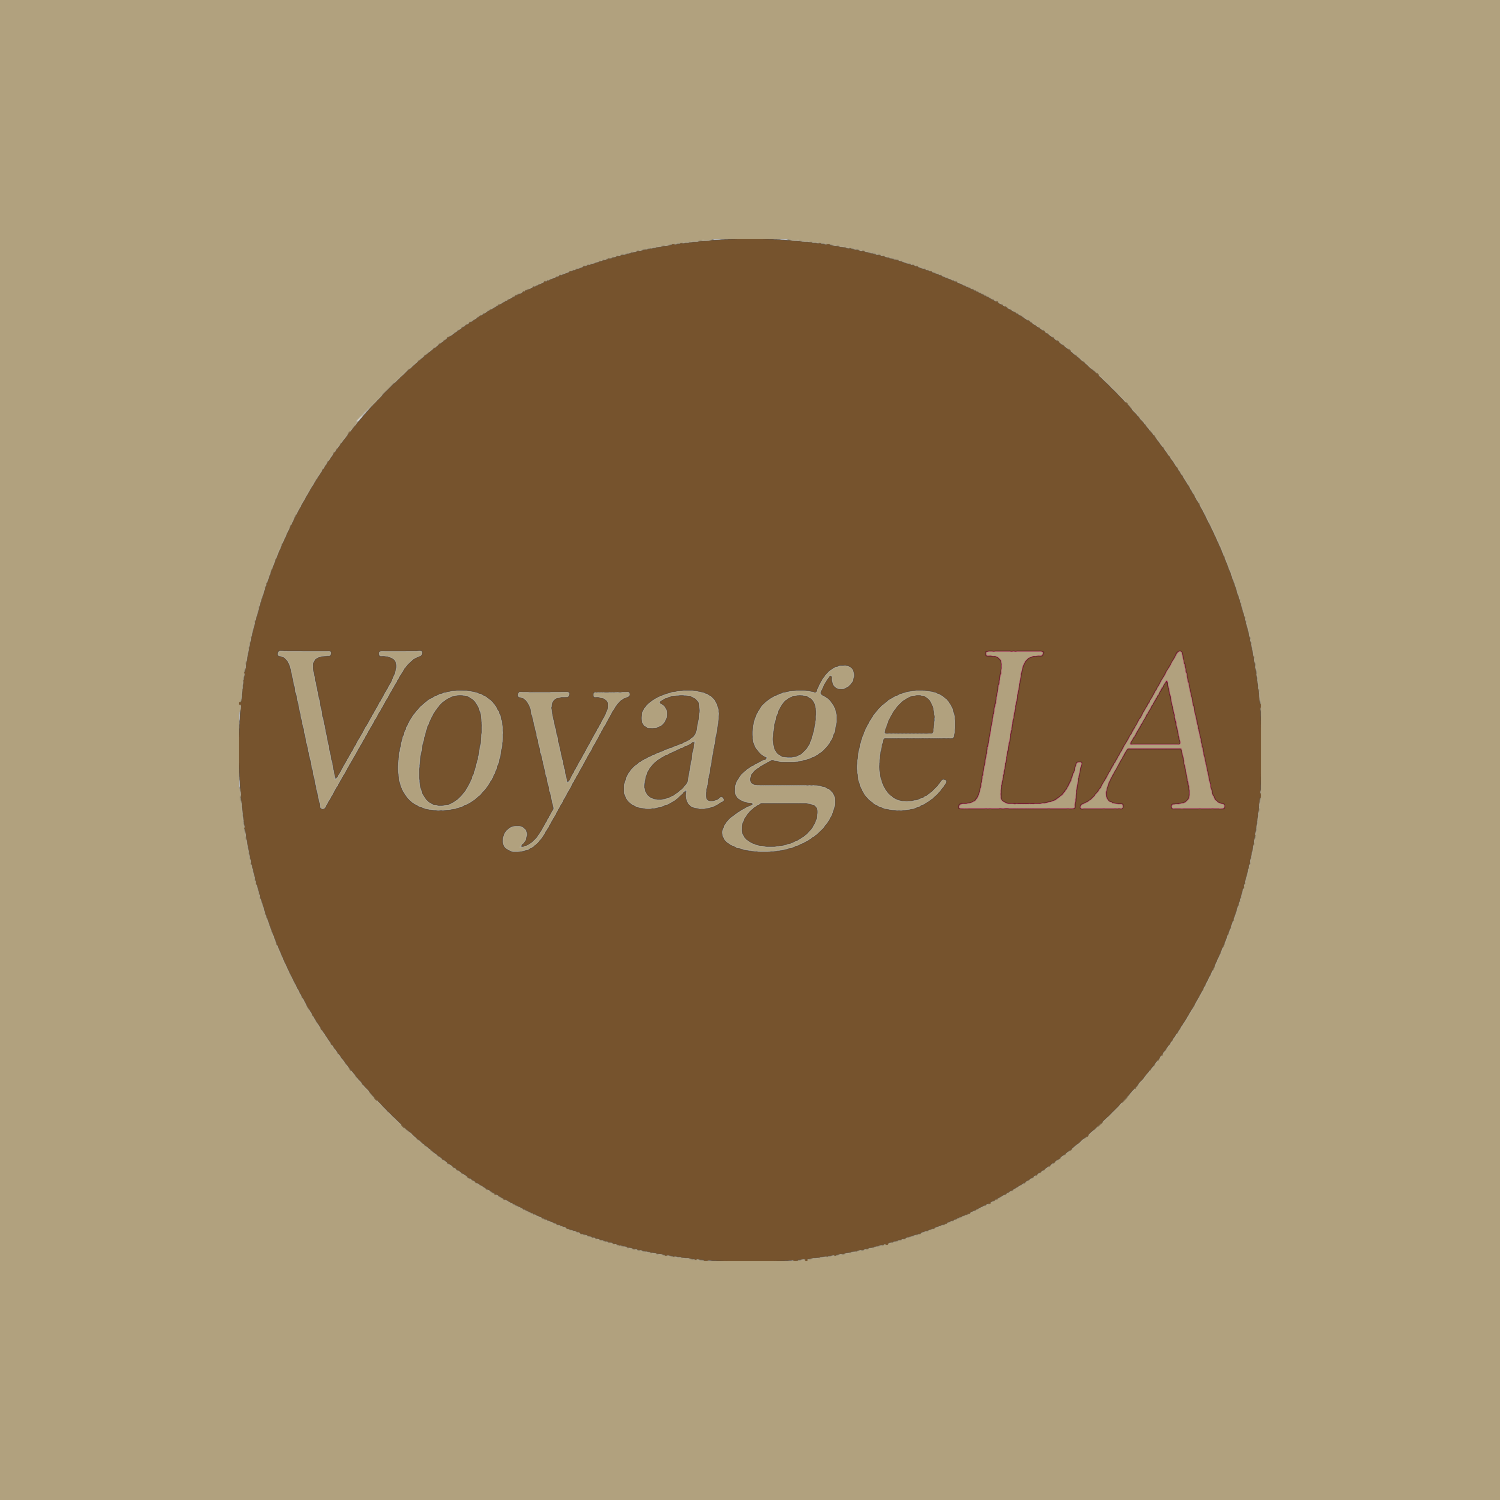 Voyage LA - Meet Lauren Tyler Brimeyer